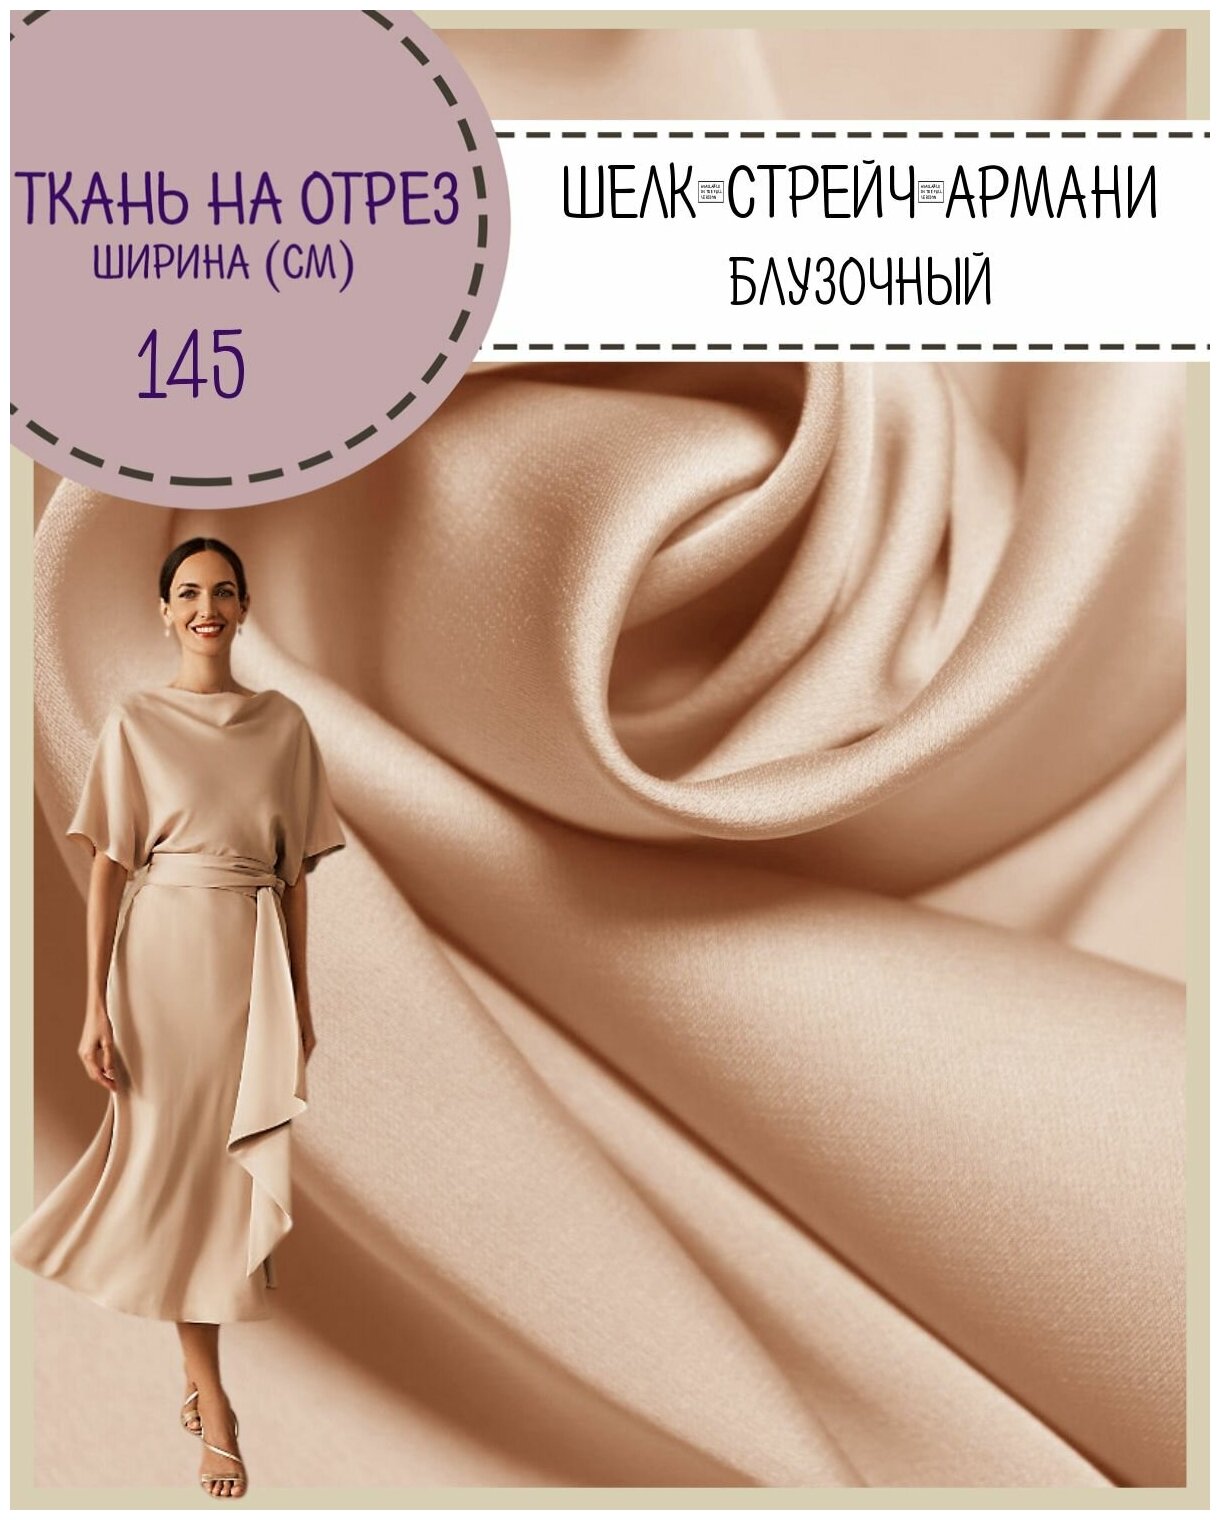 Ткань Шелк "Армани" стрейч/для платья/ блузы, цв. пудра бежевая, пл. 90 г/кв, ш-145 см, на отрез, цена за пог. метр